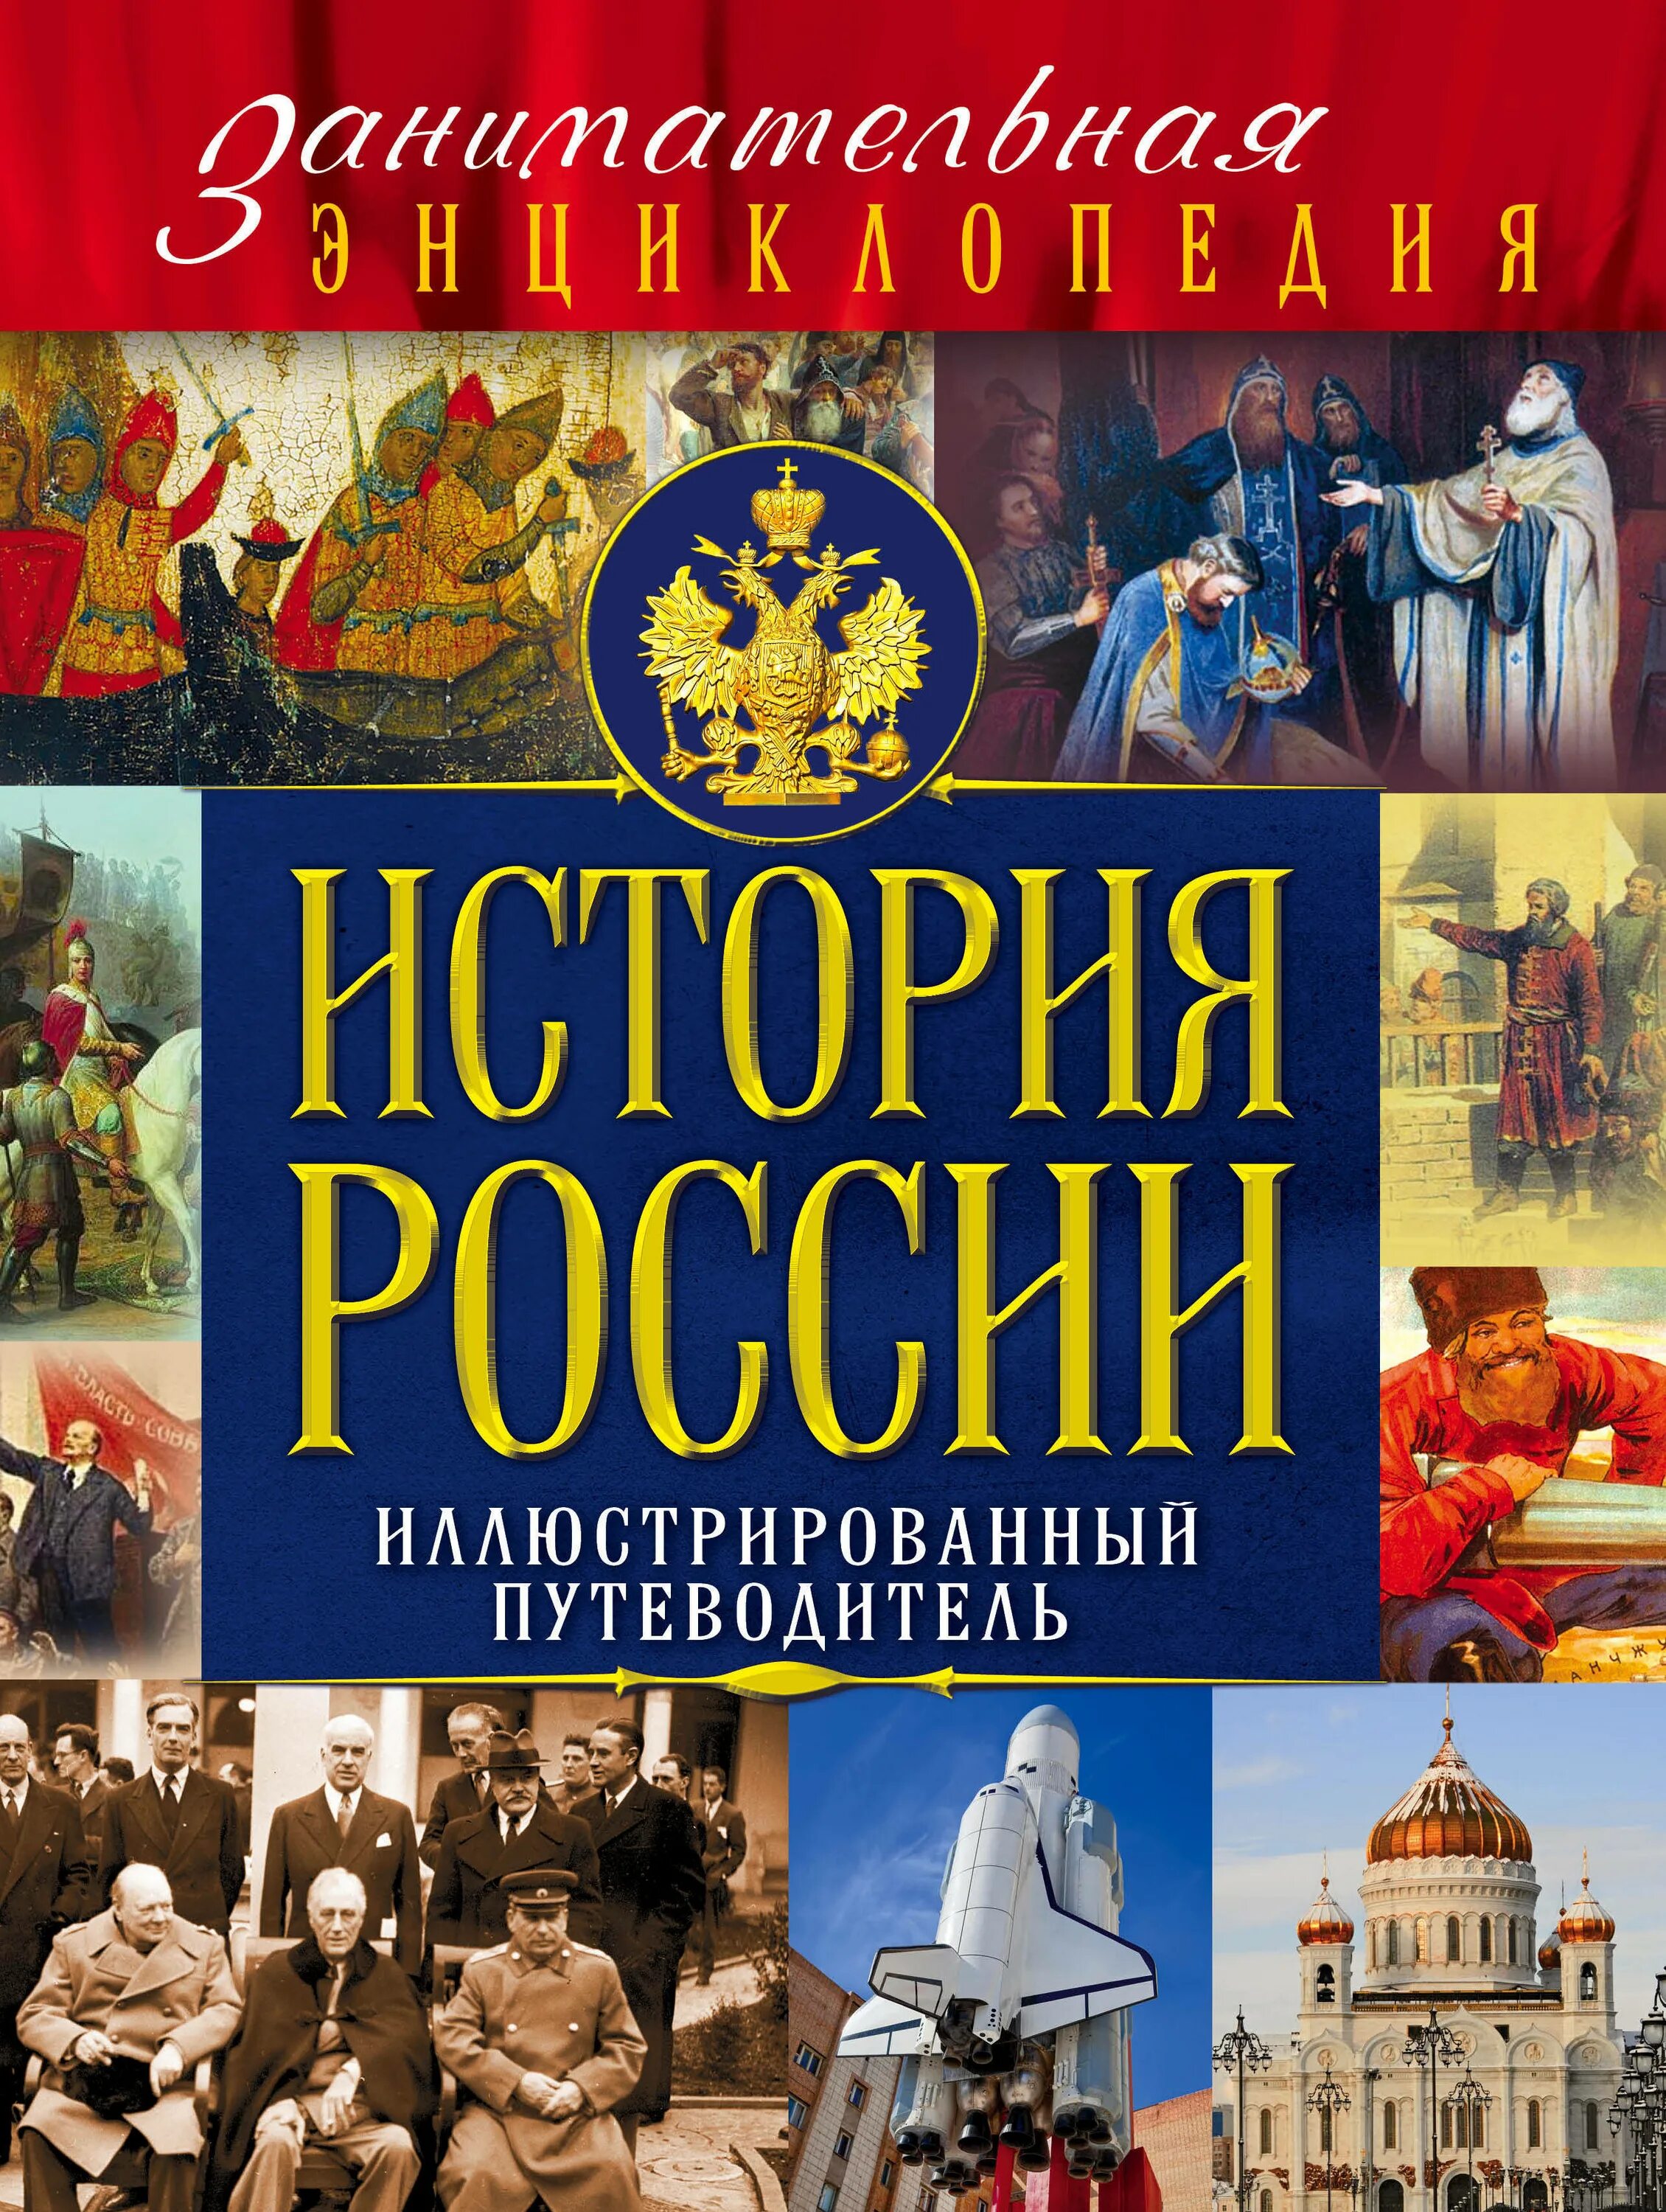 История россии в 2 книгах